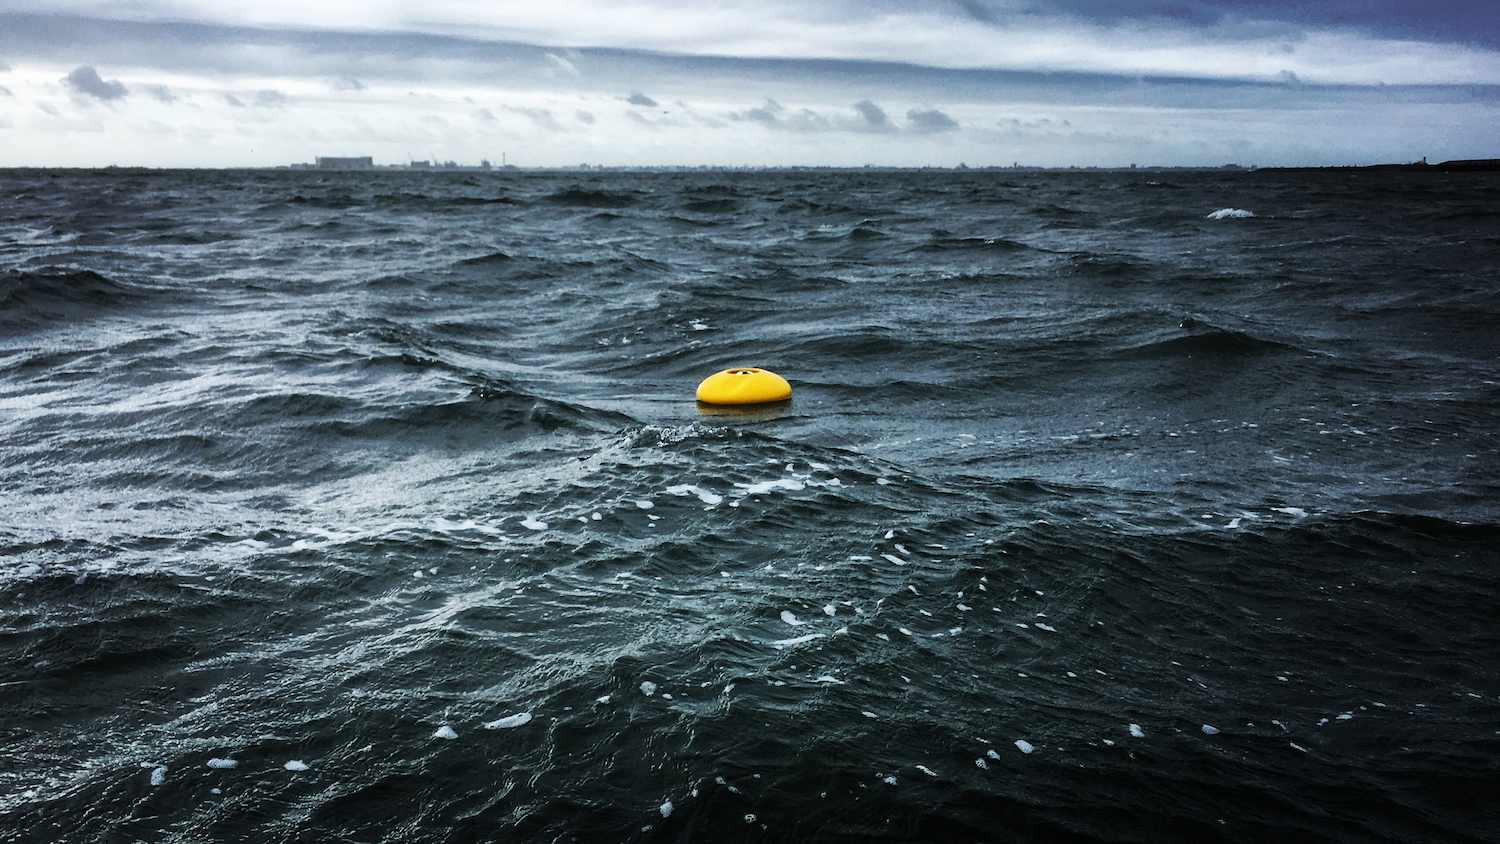 Nortek instrument floating in the water